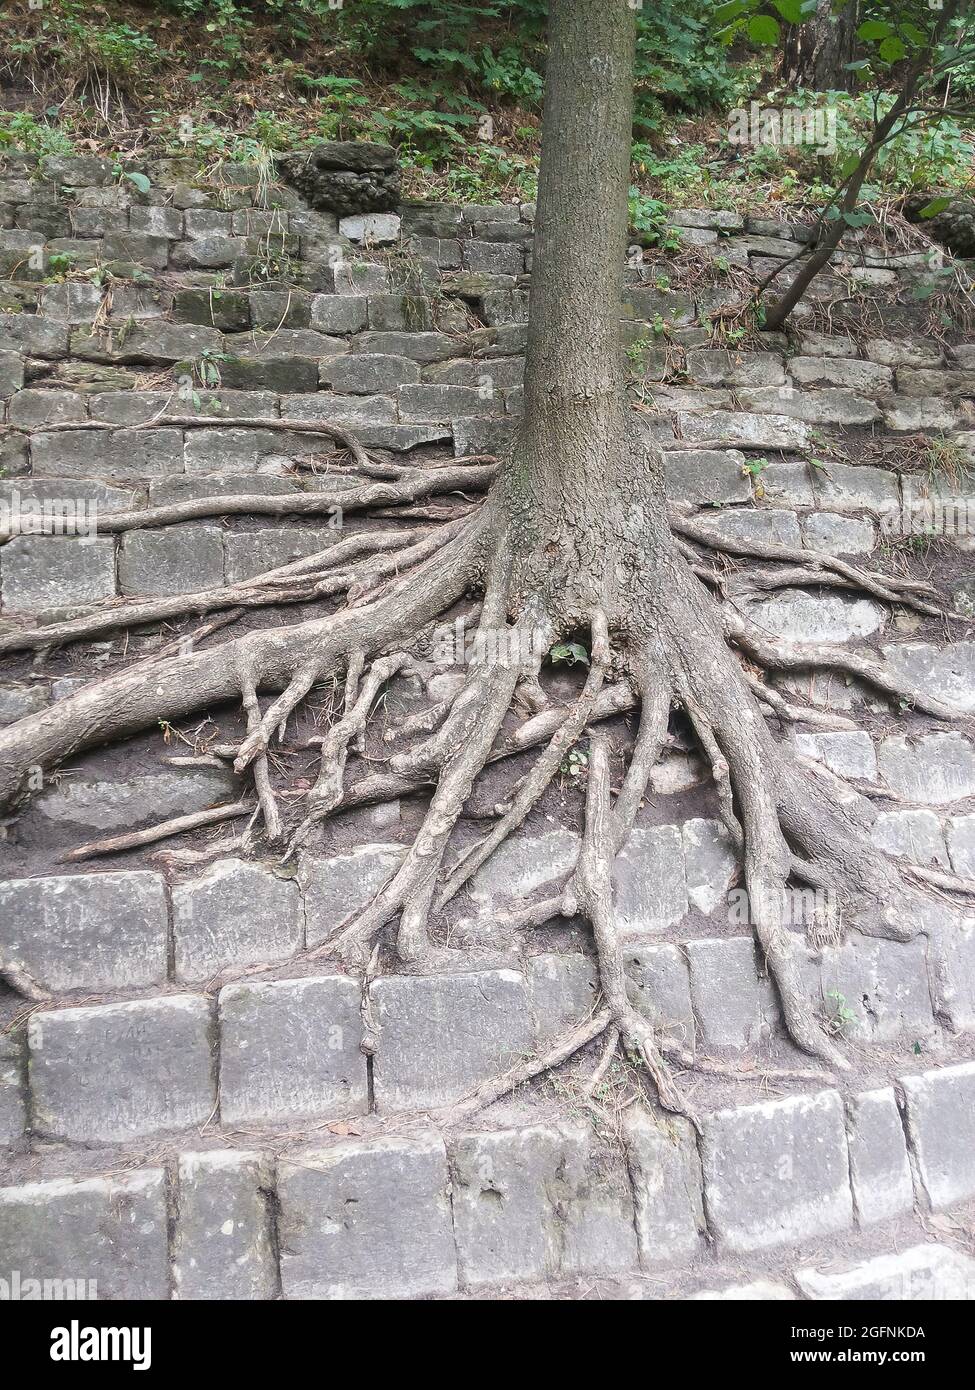 Der Baum wächst am steinernen Hang der Stufenpyramide. Zahlreiche lange Wurzelzweige krabbeln über die Steine. Stockfoto